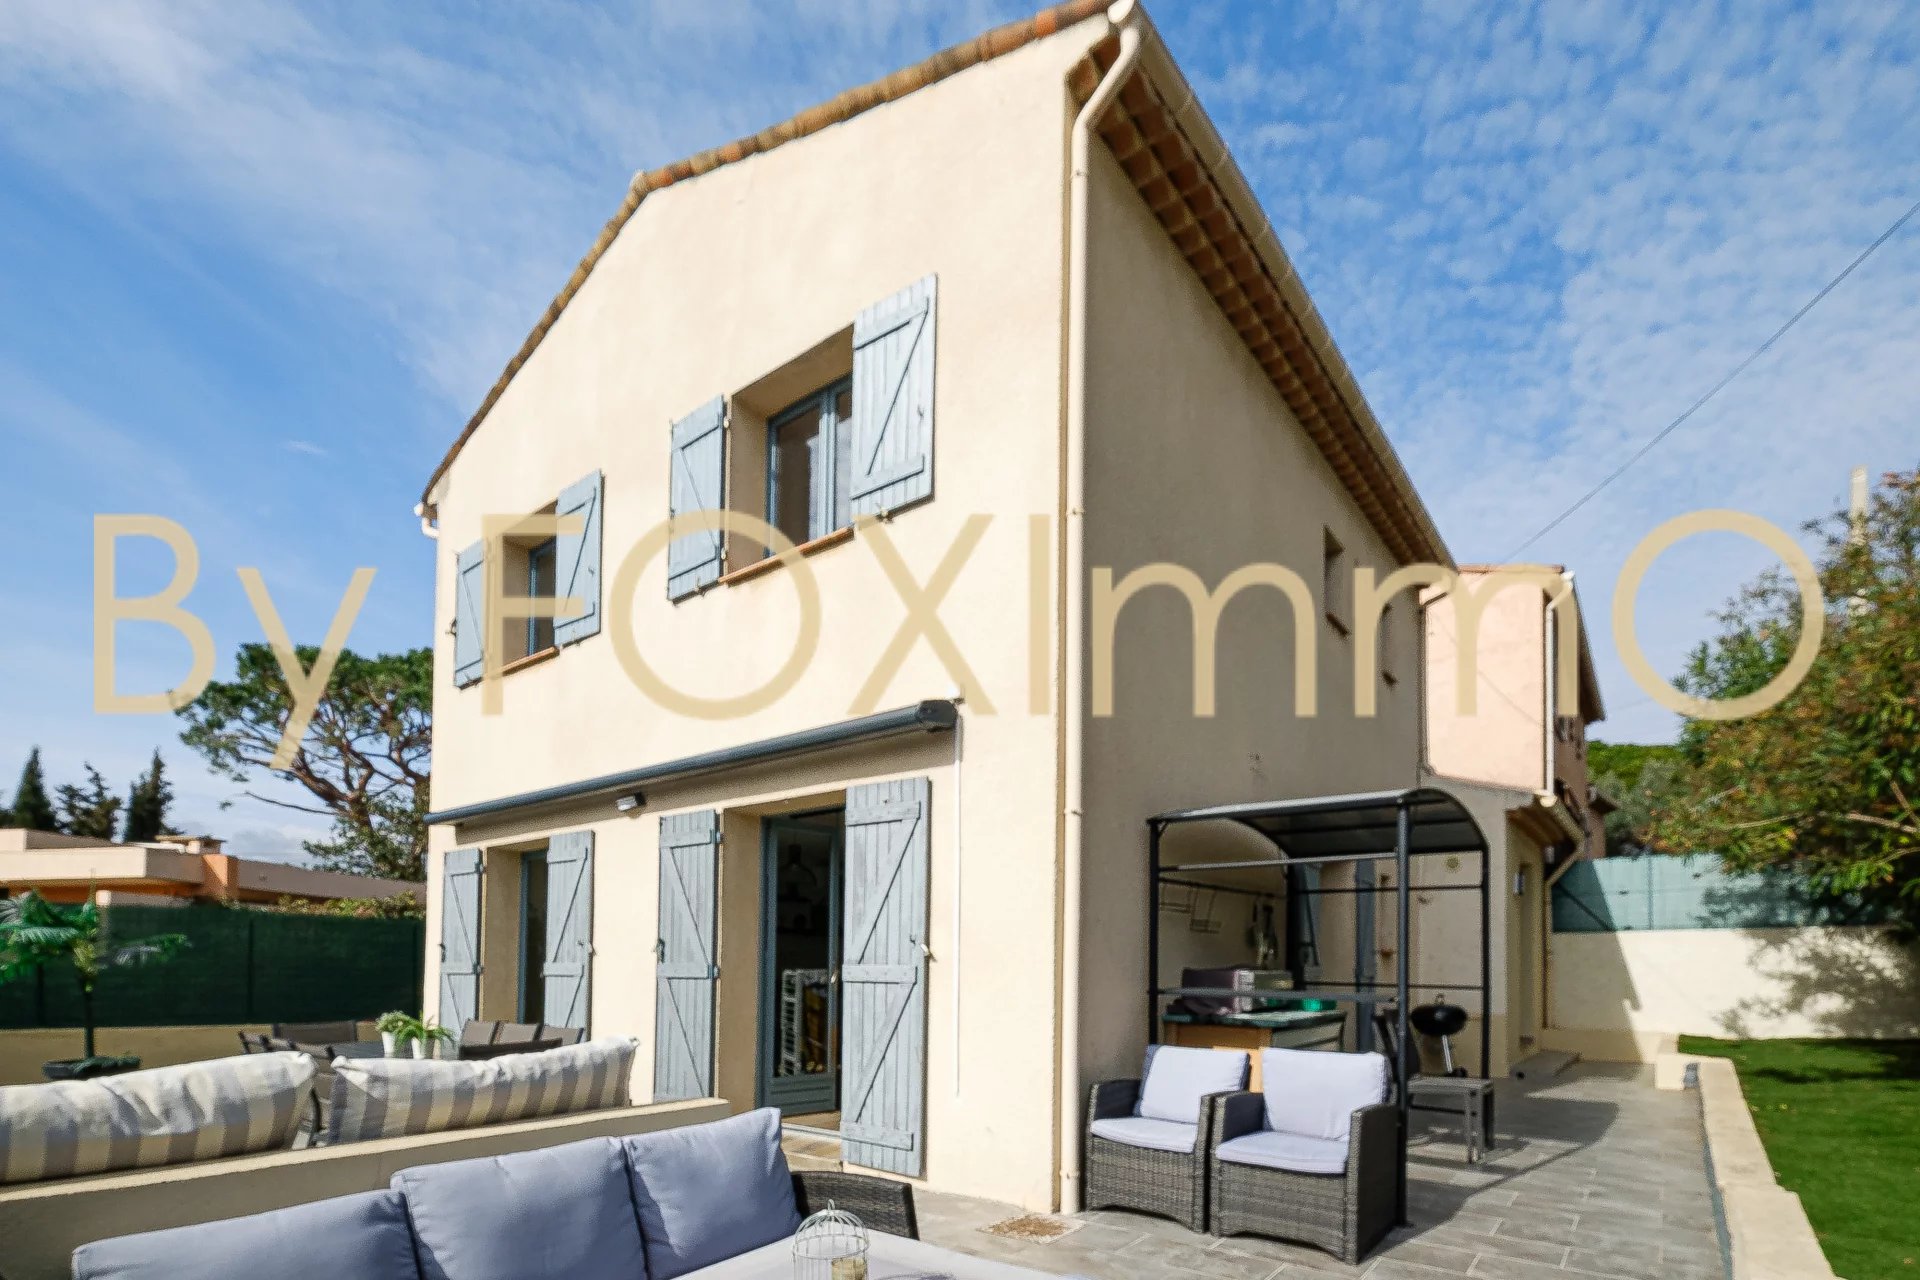 A vendre sur la Côte d'Azur, dans le quartier des Bréguières jolie maison jumelée familiale de 5 pièces au calme absolu